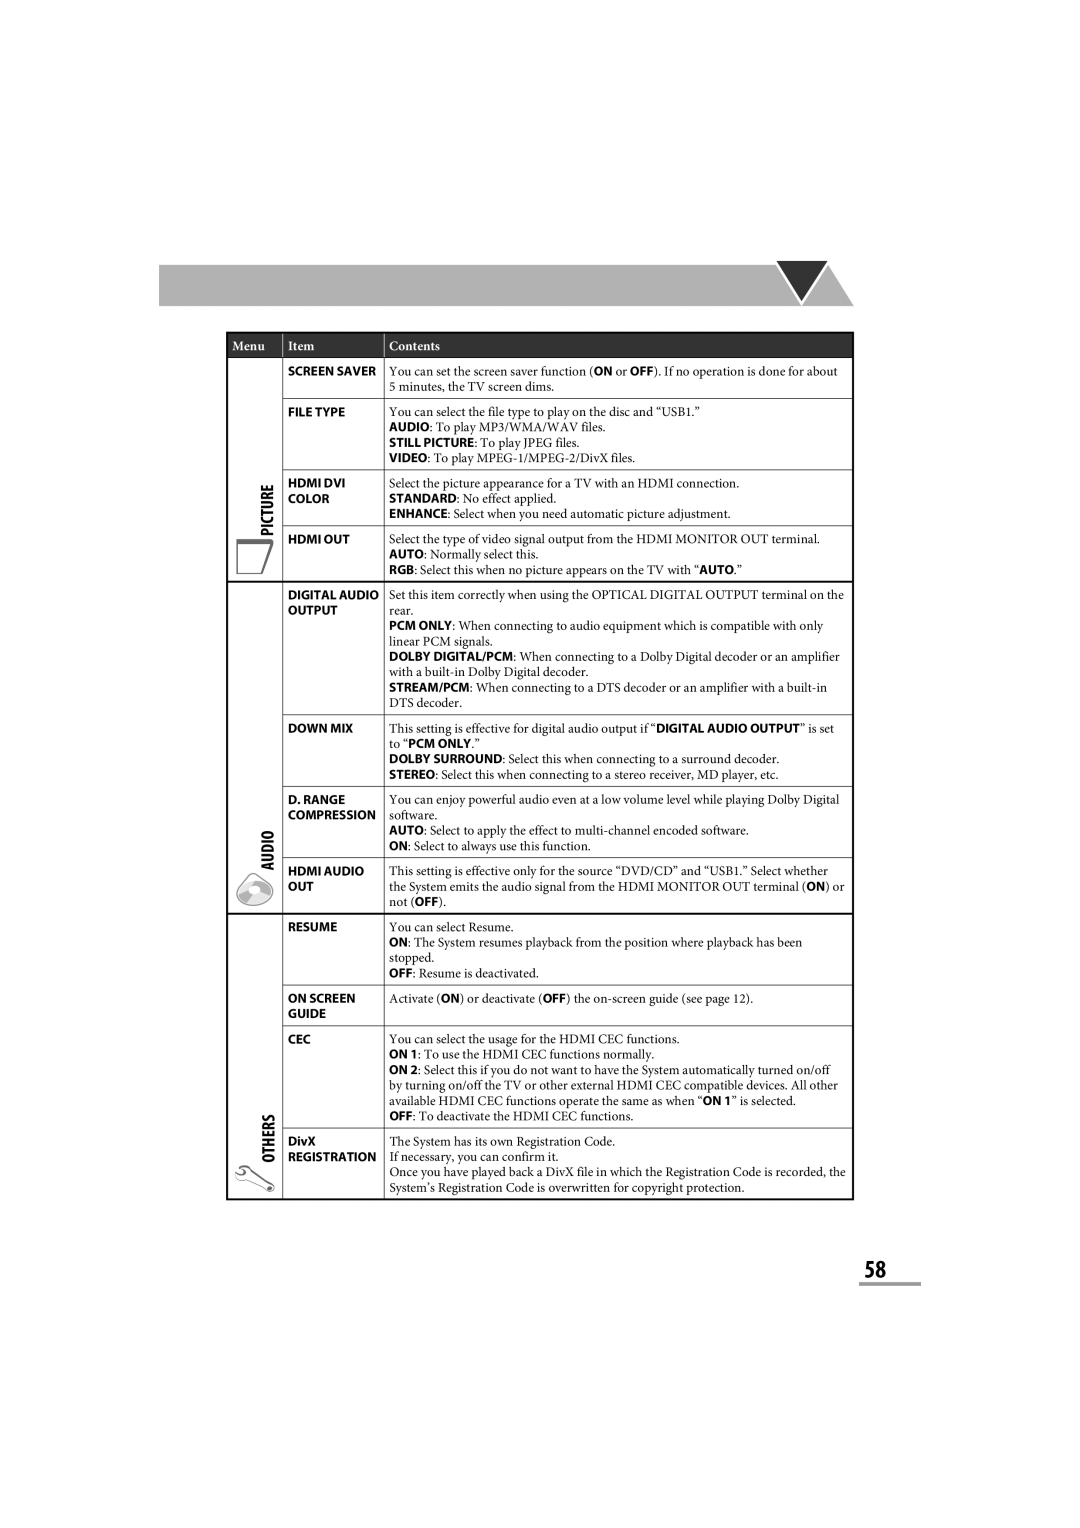 JVC CA-NXG9 manual Menu, Item, Contents, File Type 